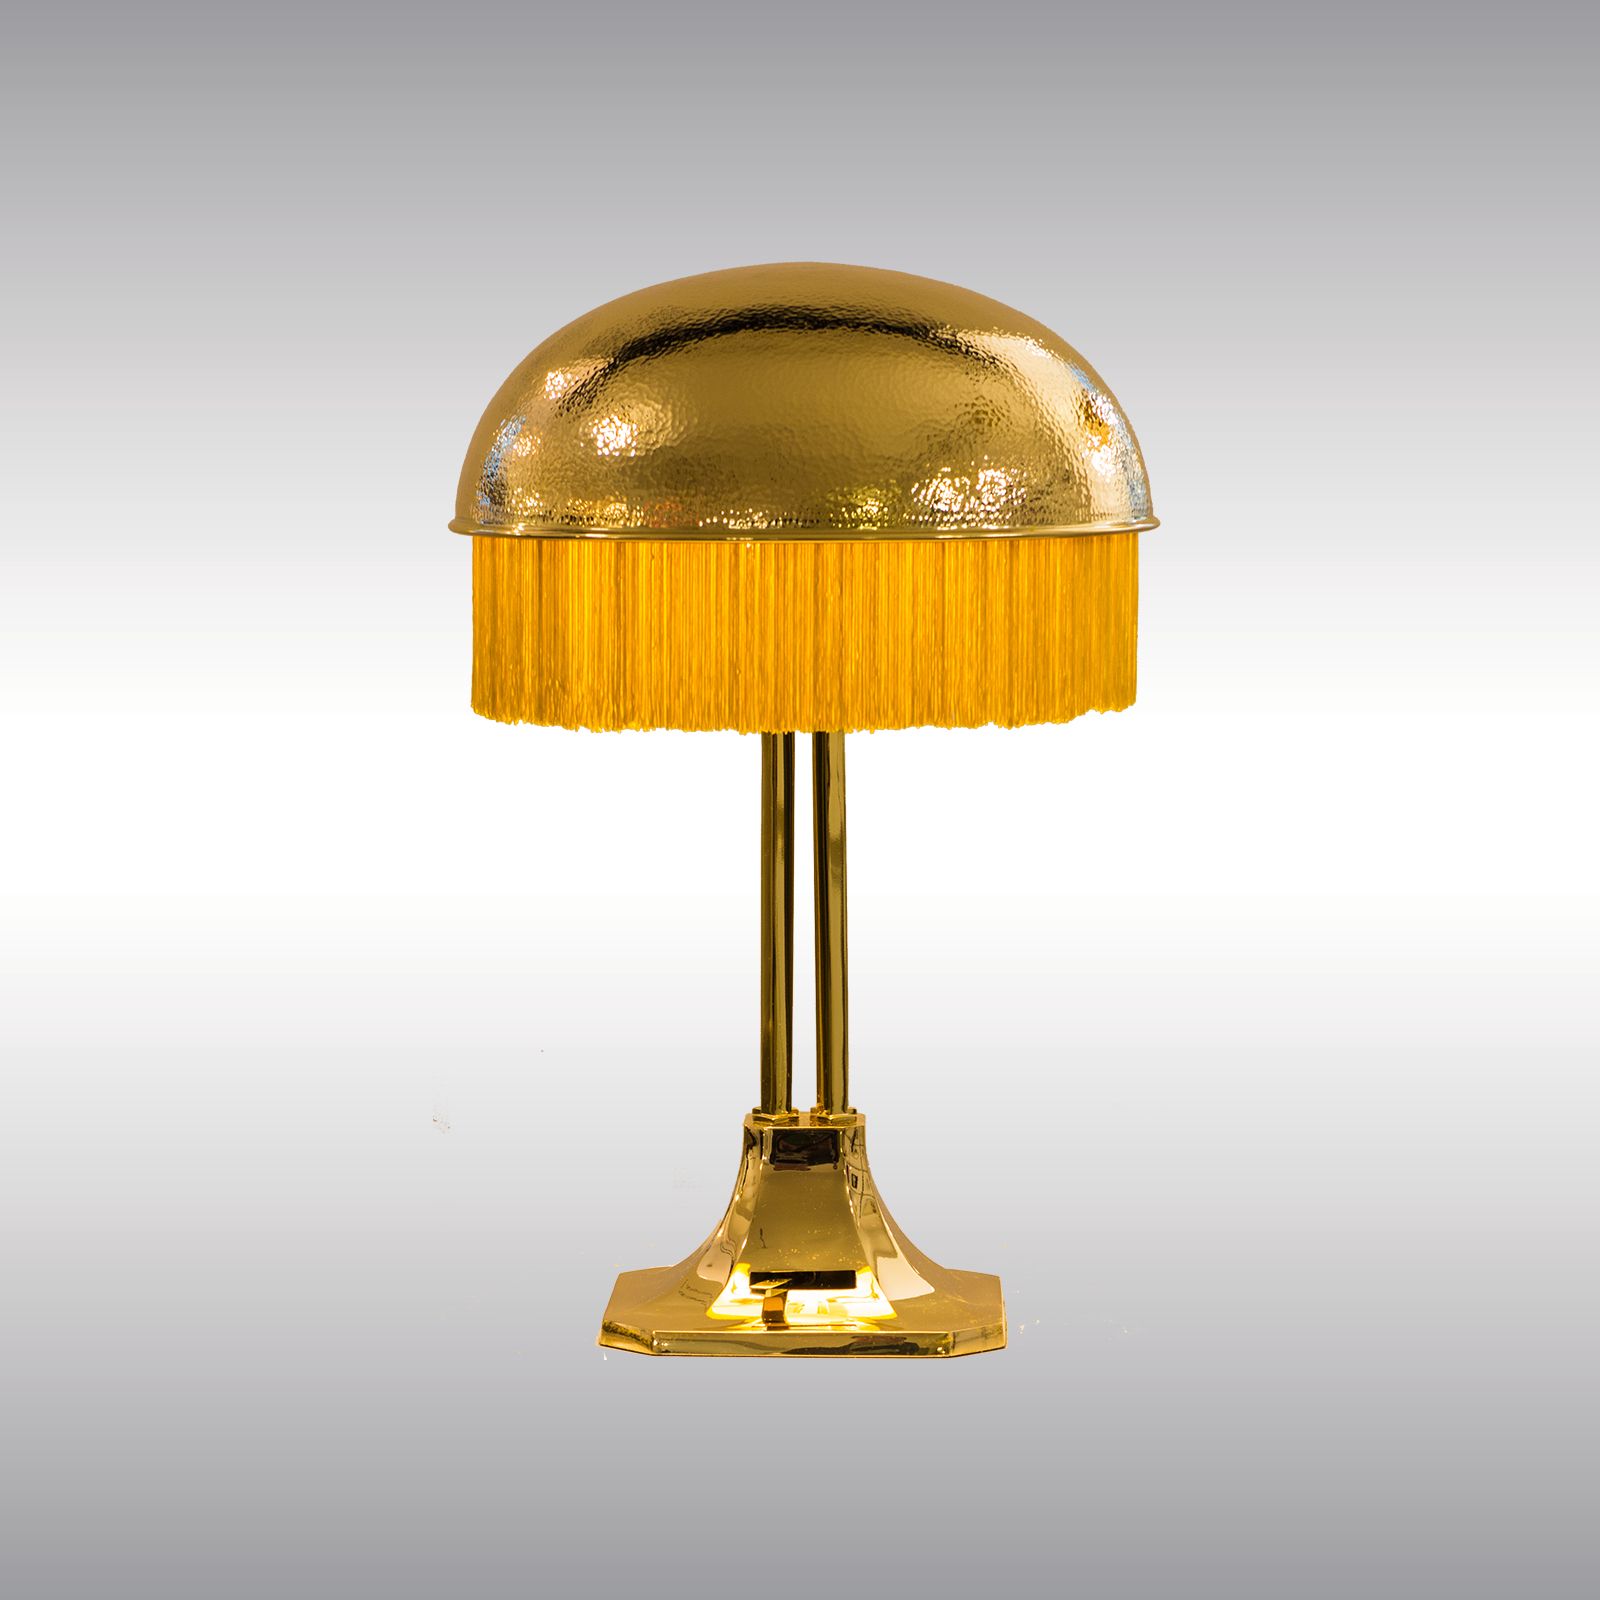 WOKA LAMPS VIENNA - OrderNr.: 21709|Turnowsky - Design: Adolf Loos